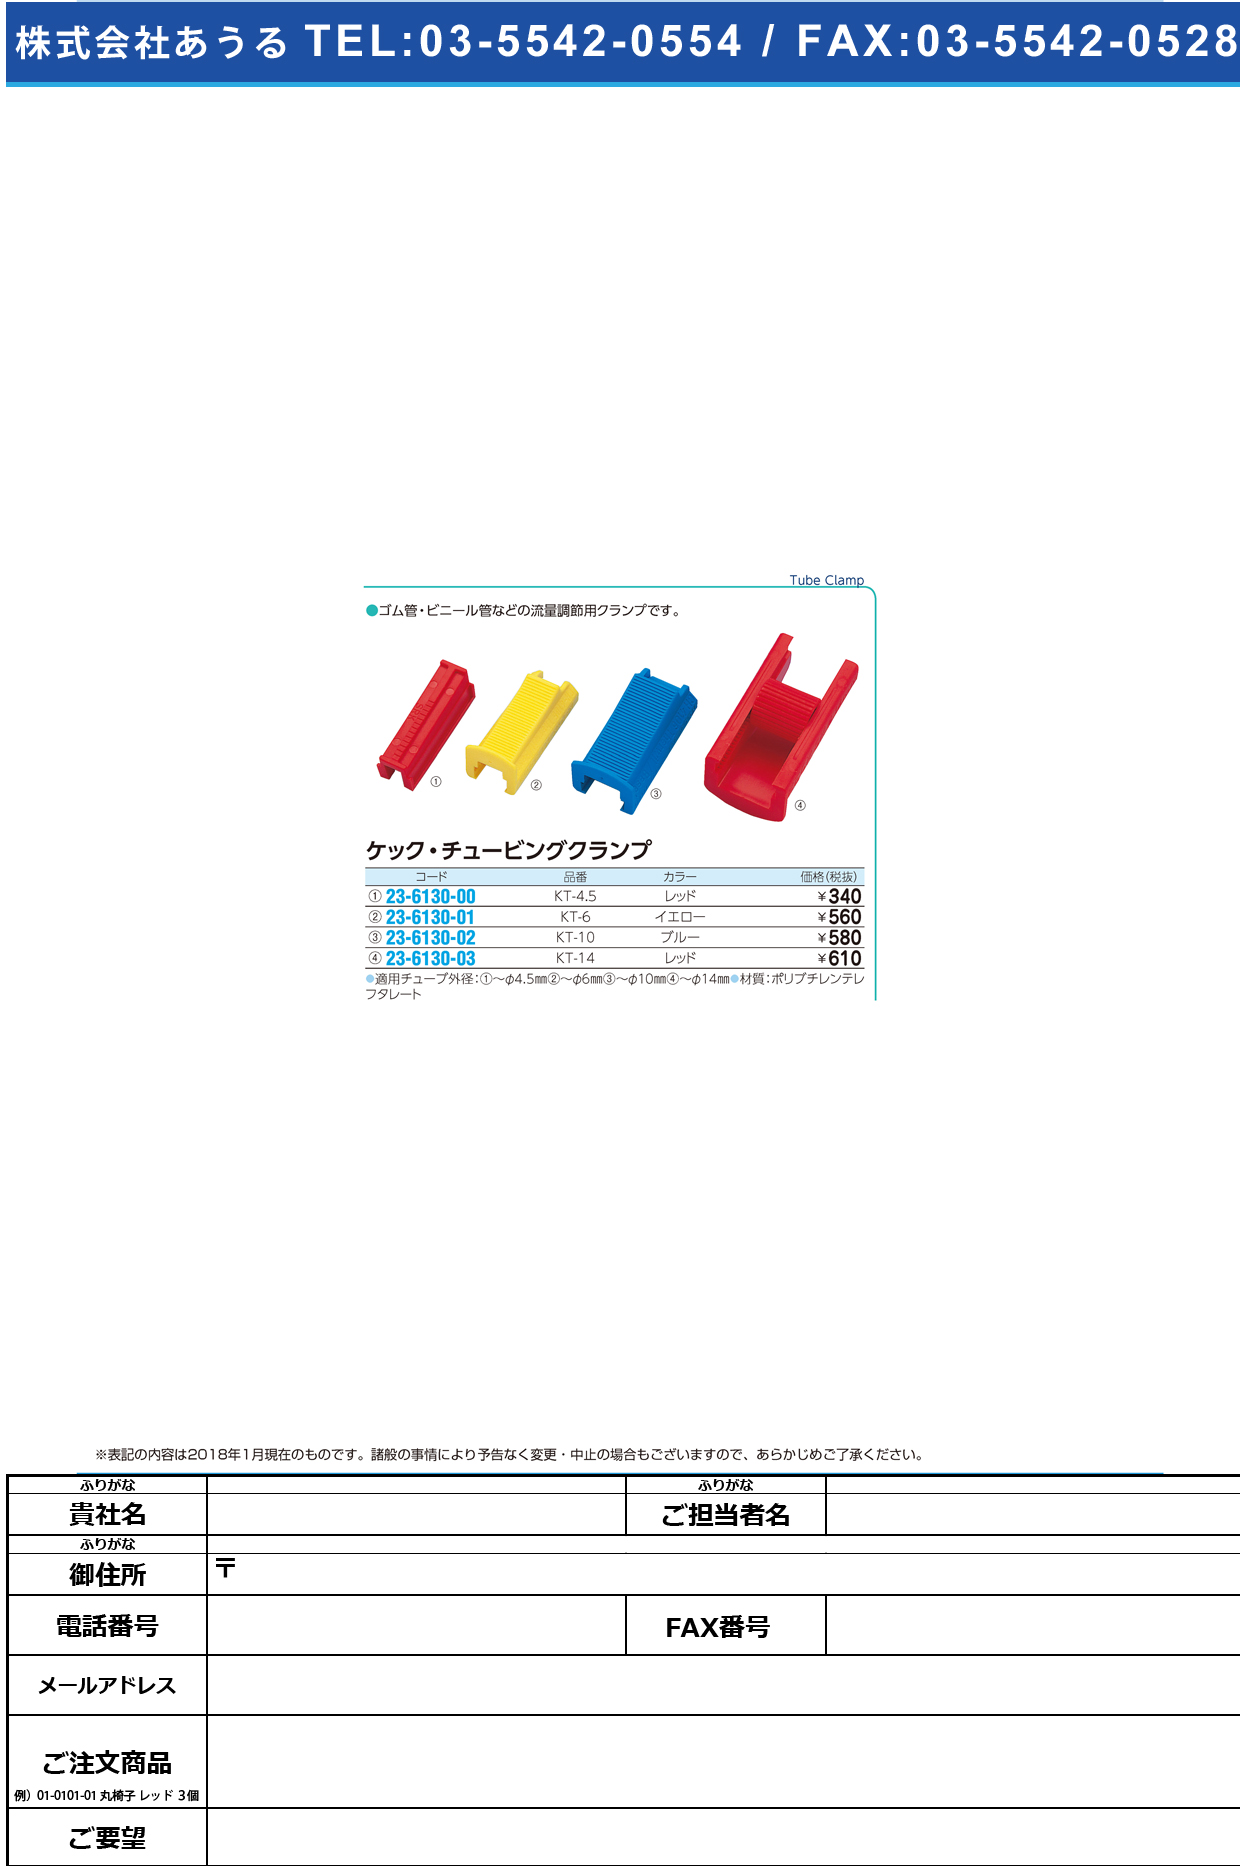 (23-6130-02)ケック・チュービングクランプ KT-10(ﾌﾞﾙｰ) ｹｯｸﾁｭｰﾋﾞﾝｸﾞｸﾗﾝﾌﾟ【1個単位】【2019年カタログ商品】